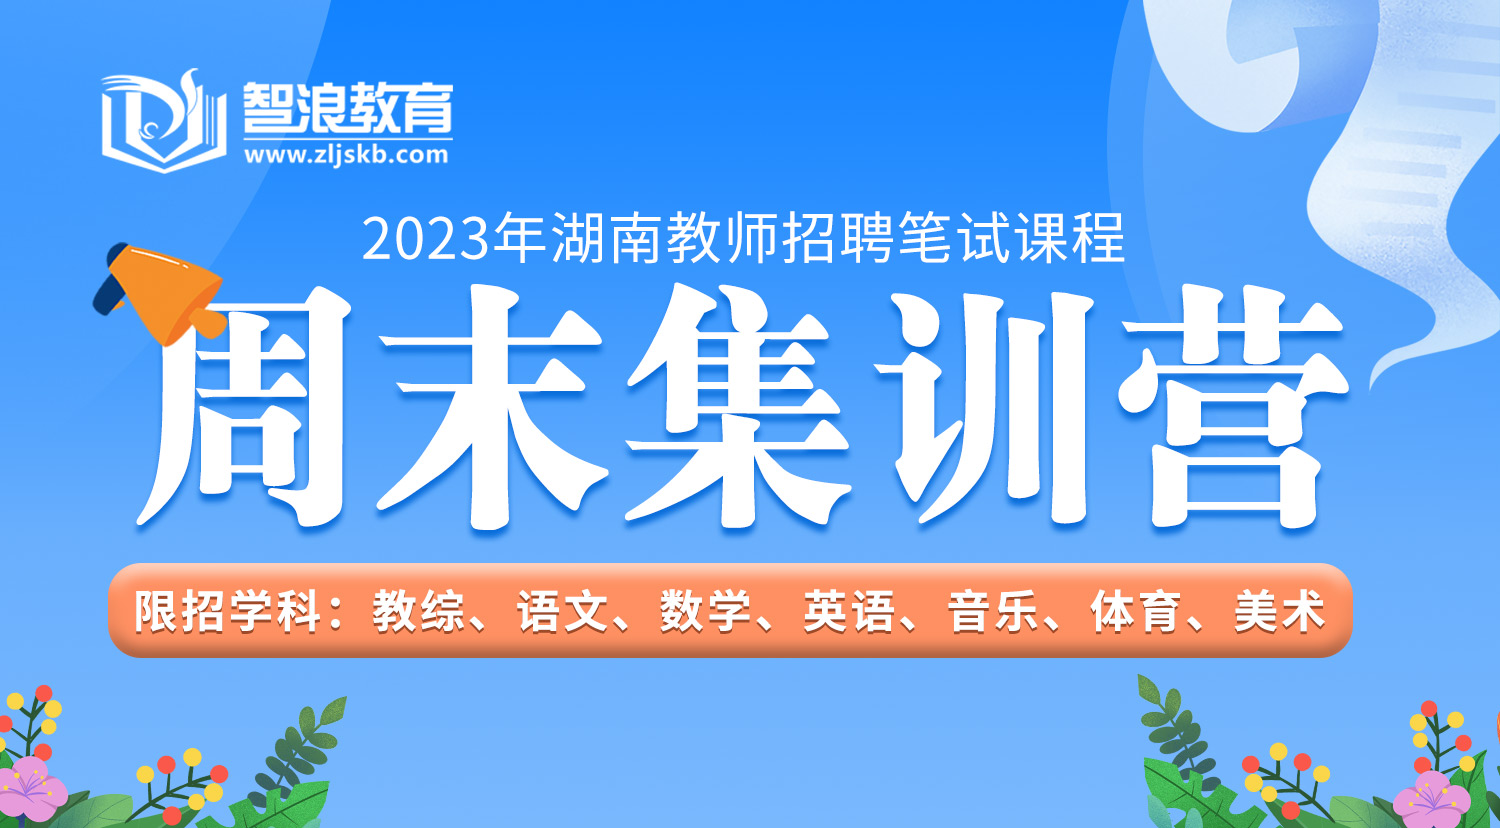 2023年湖南教师招聘笔试课程周末集训营